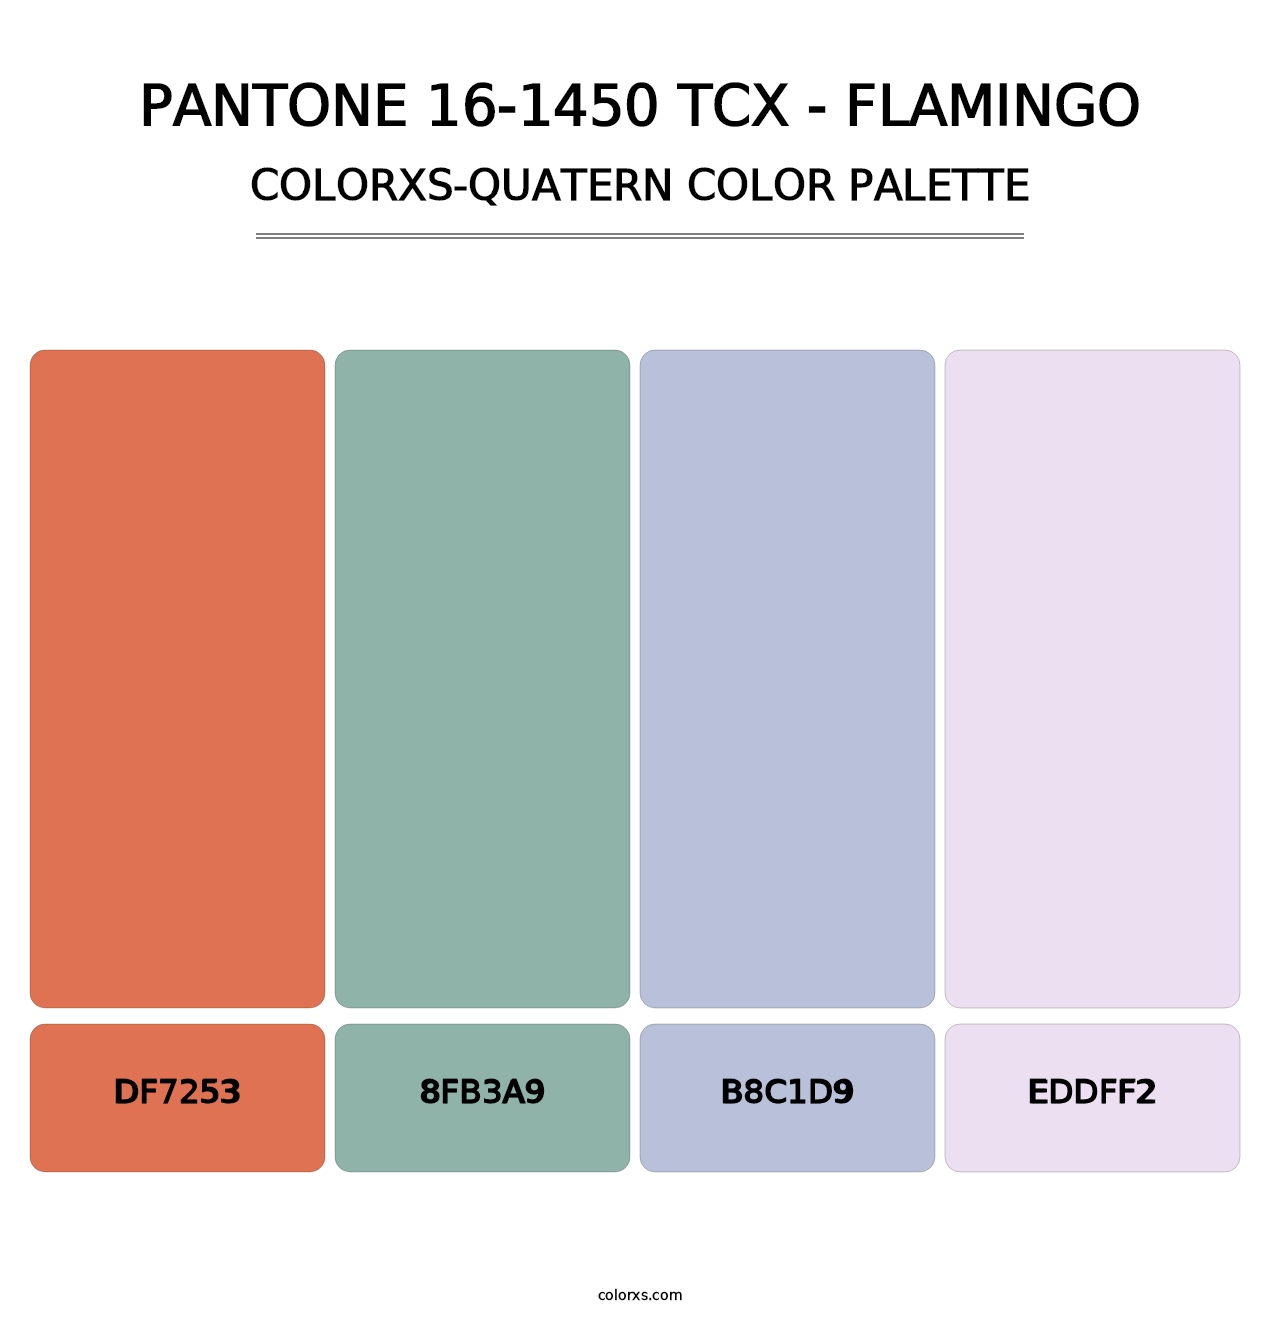 PANTONE 16-1450 TCX - Flamingo - Colorxs Quatern Palette